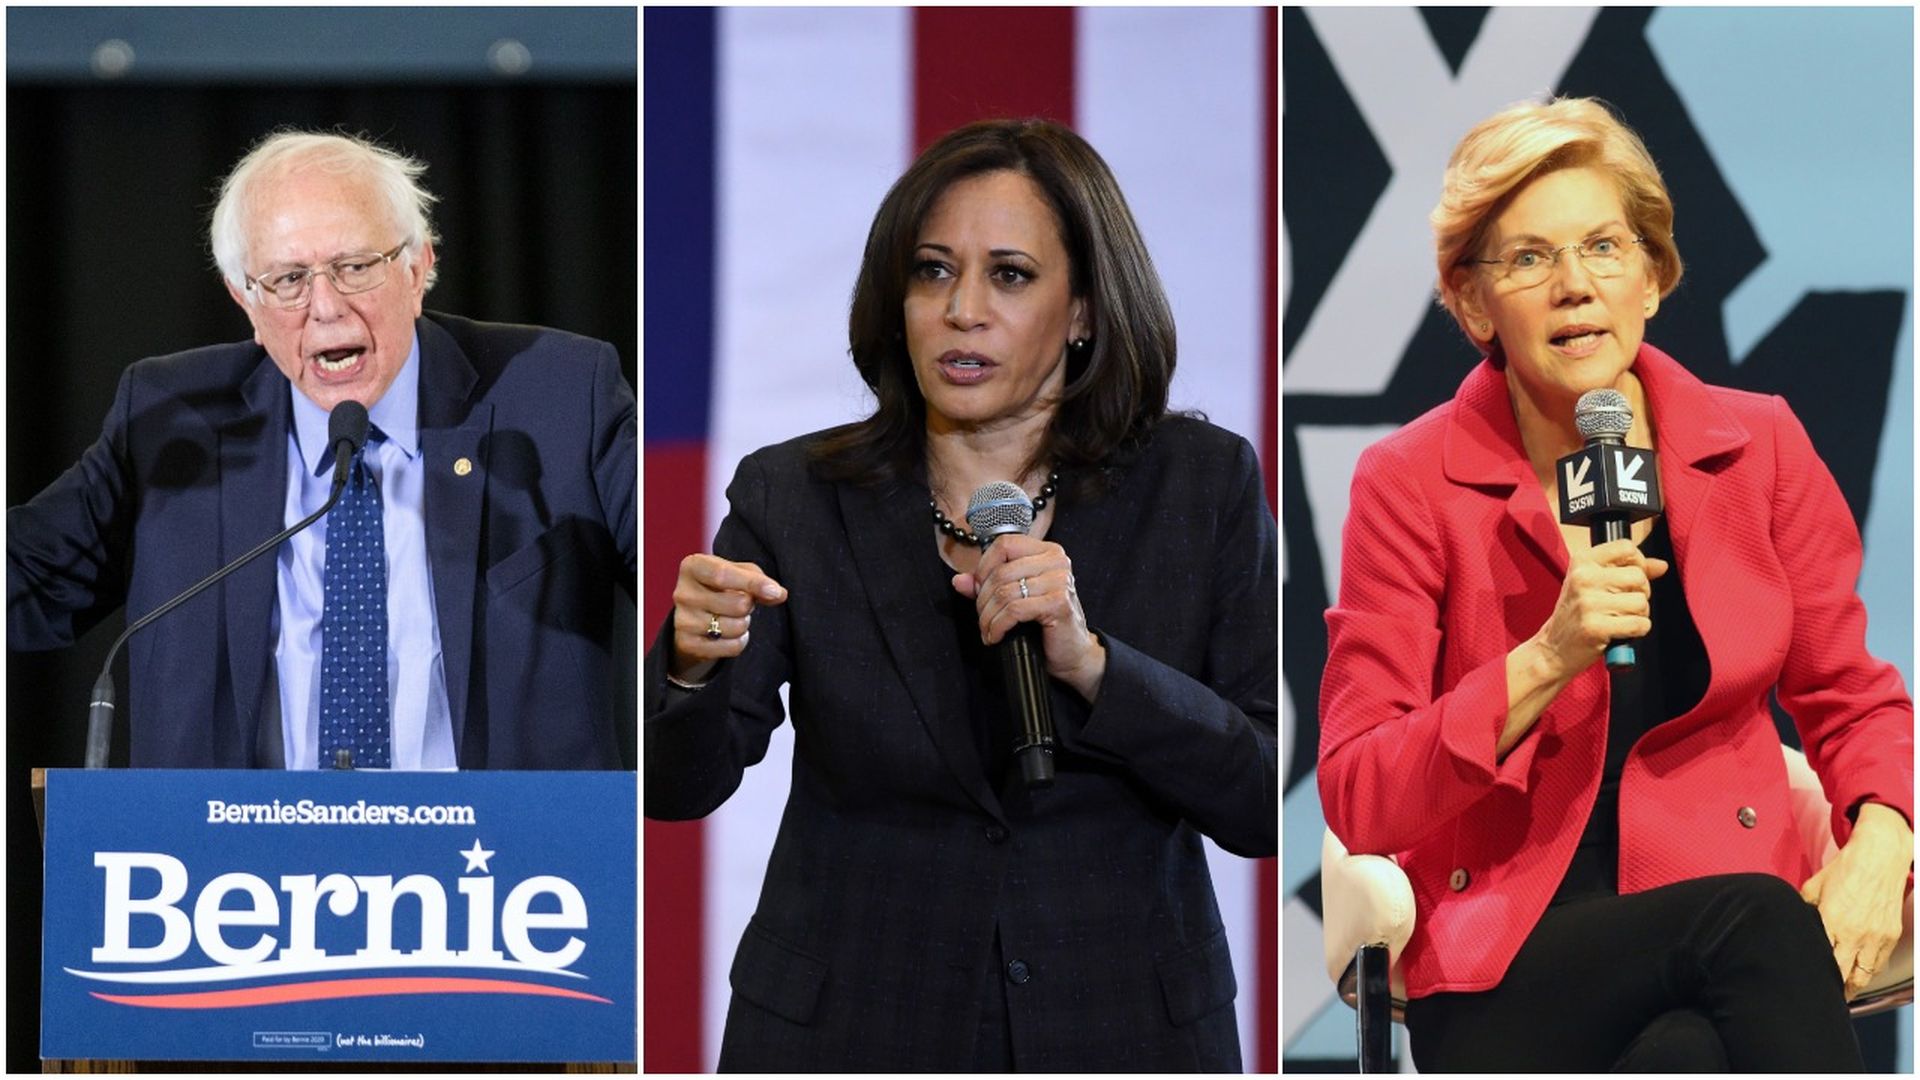 Bernie Sanders, Kamala Harris, Elizabeth Warren pictures in a collage